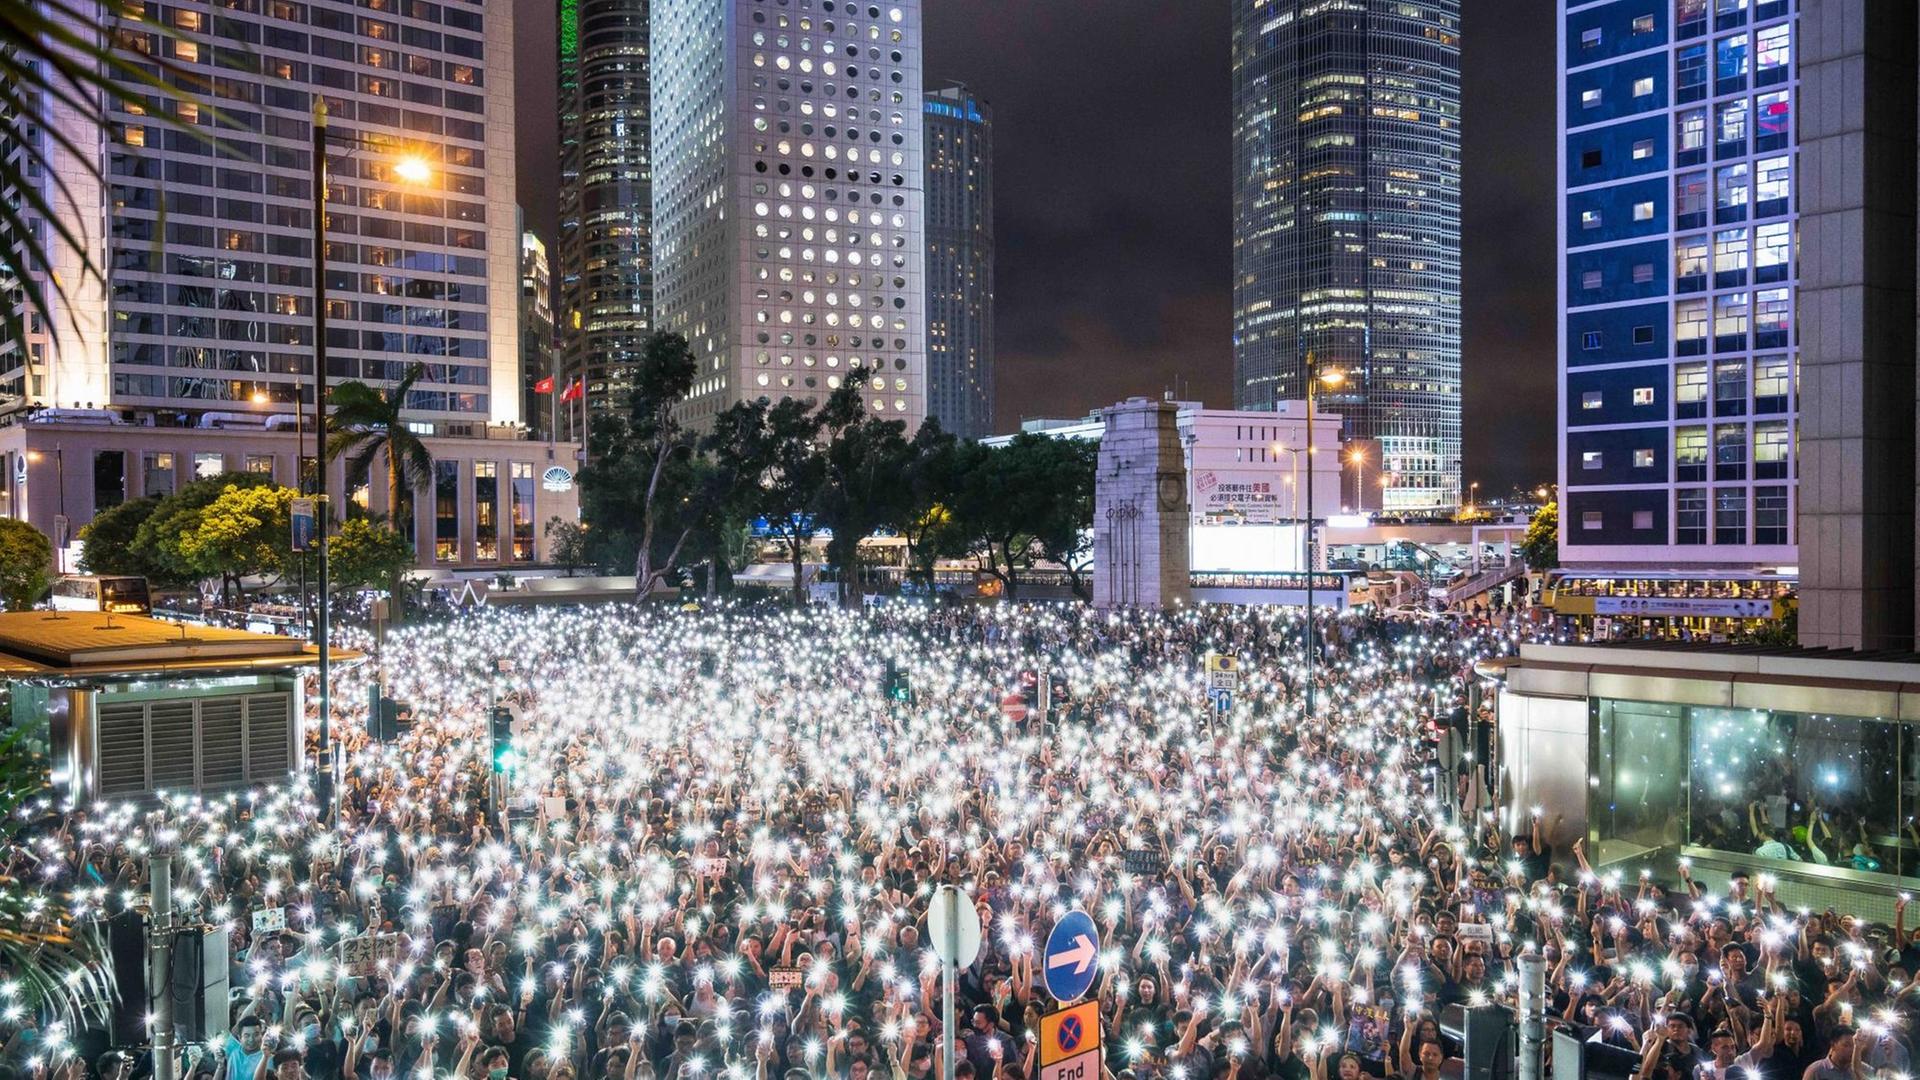 Nächtliche Demonstrantenversammlung mit Smartphones als Taschenlampen, während einer Kundgebung im Chater Garden, am 2. August 2019 in Hong Kong. Im Hintergrund sind beleuchtete Wolkenkratzer zu sehen.